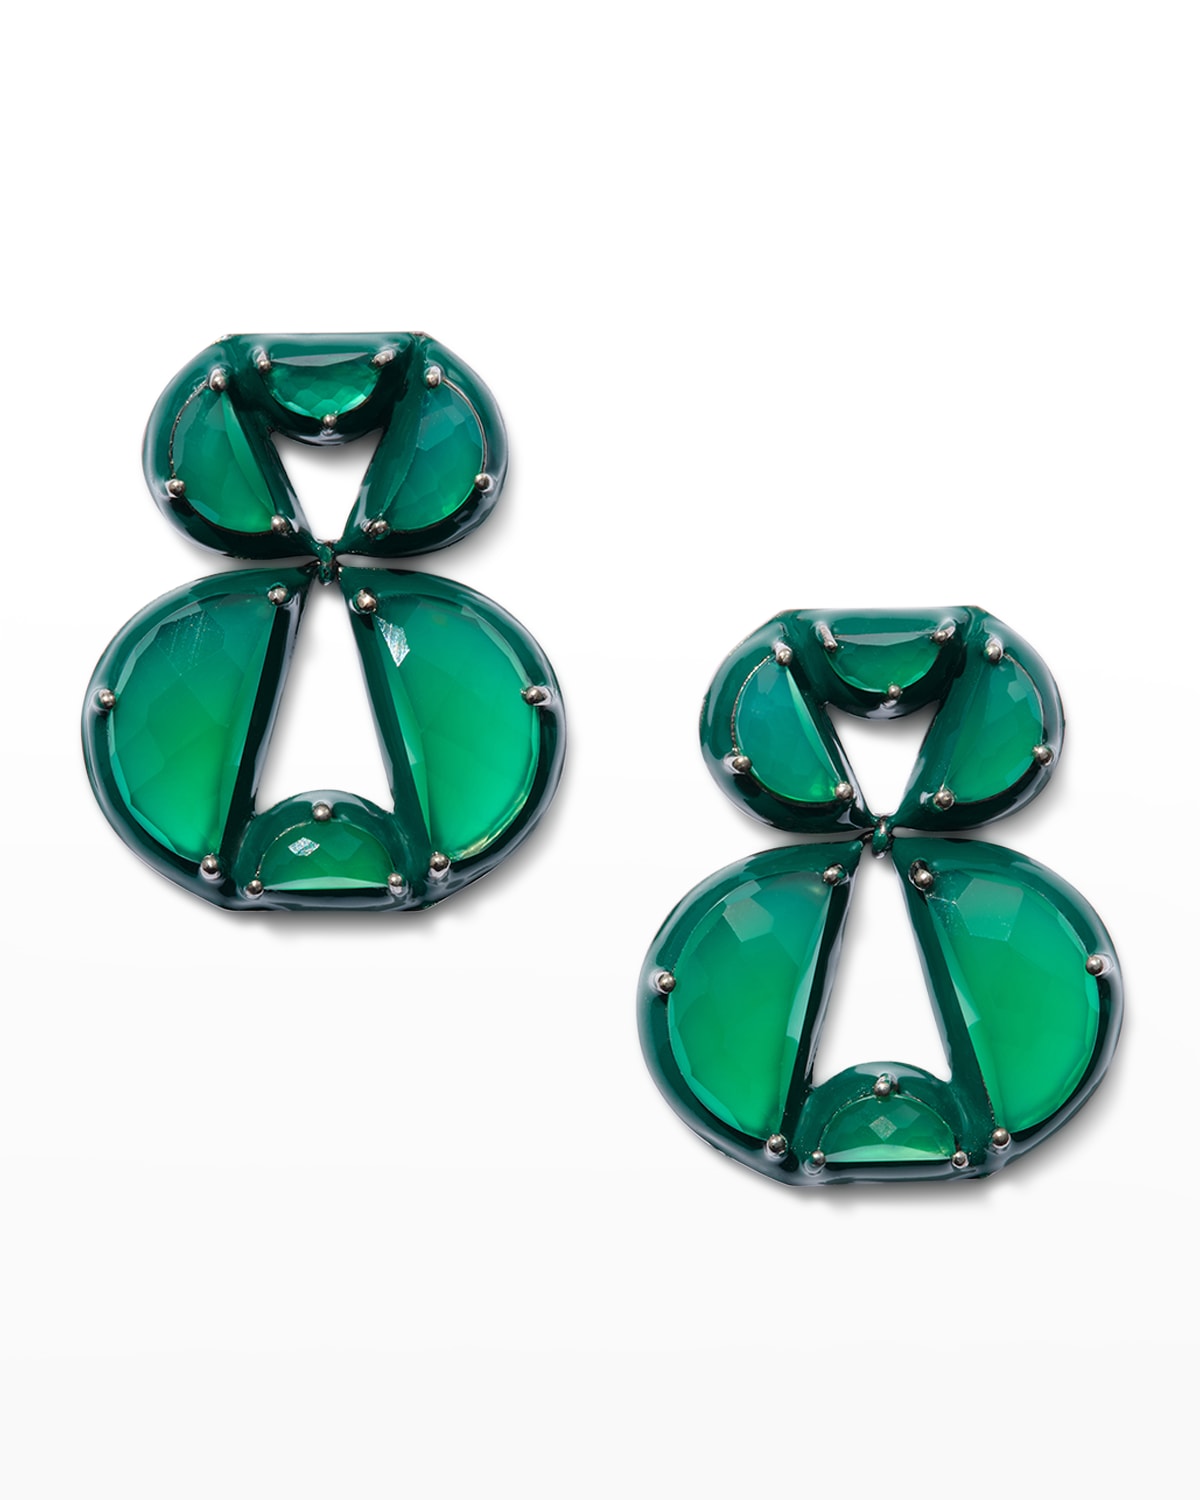 Infinity Earrings in Green Onyx